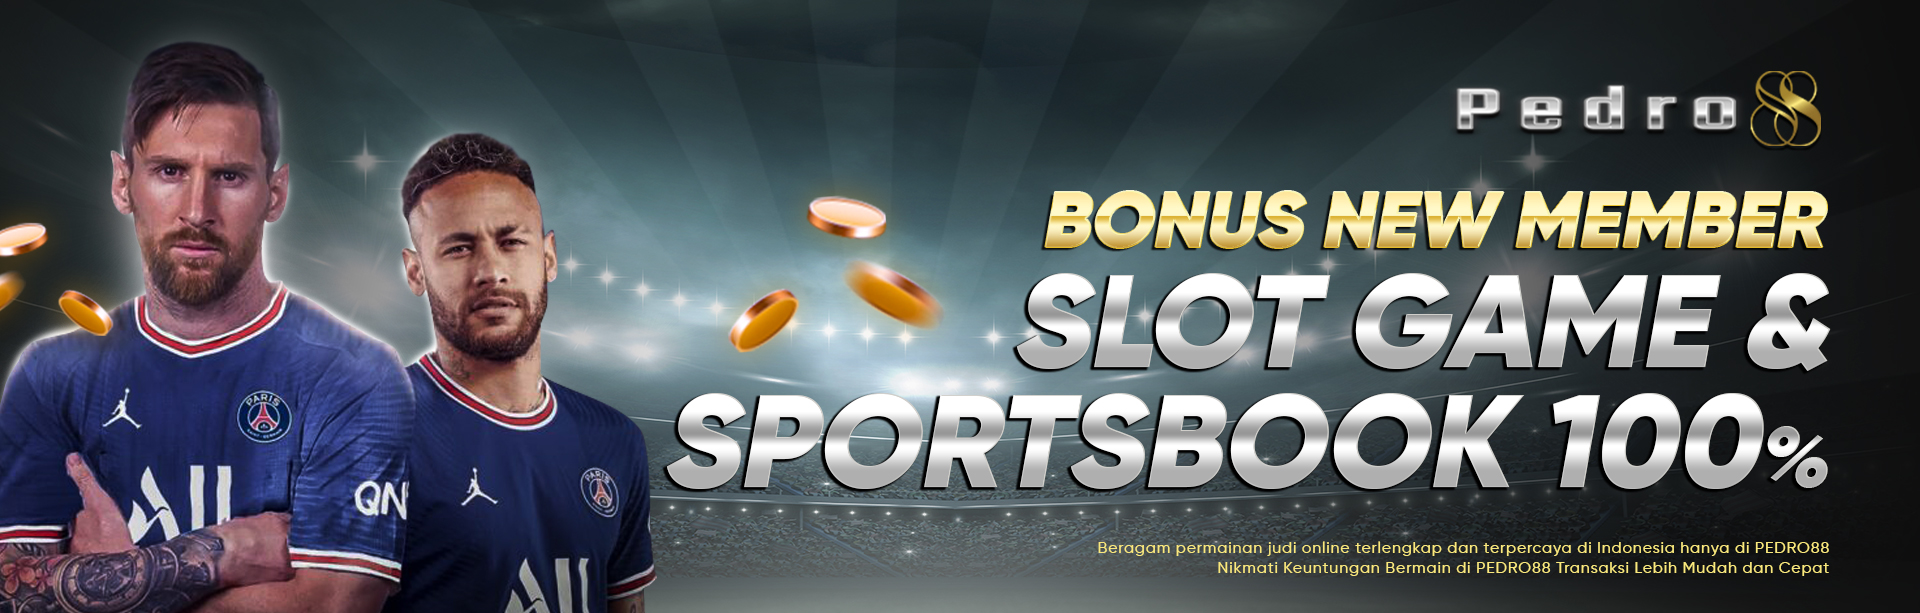 Bonus New Member 100% Sportsbook dan Slot Game